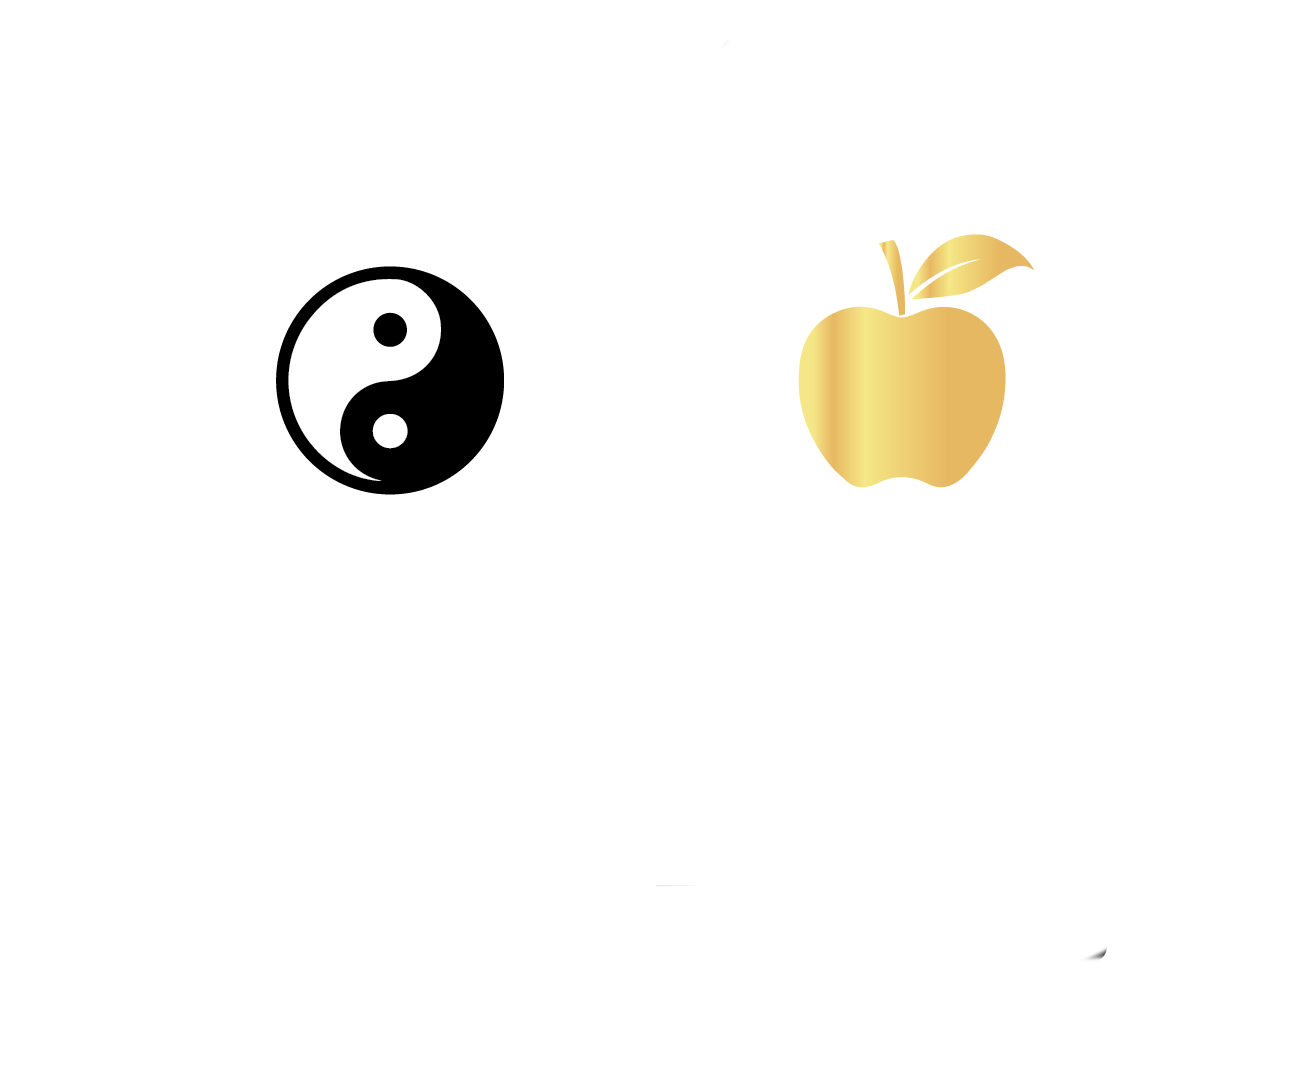 Lisa Stampfer